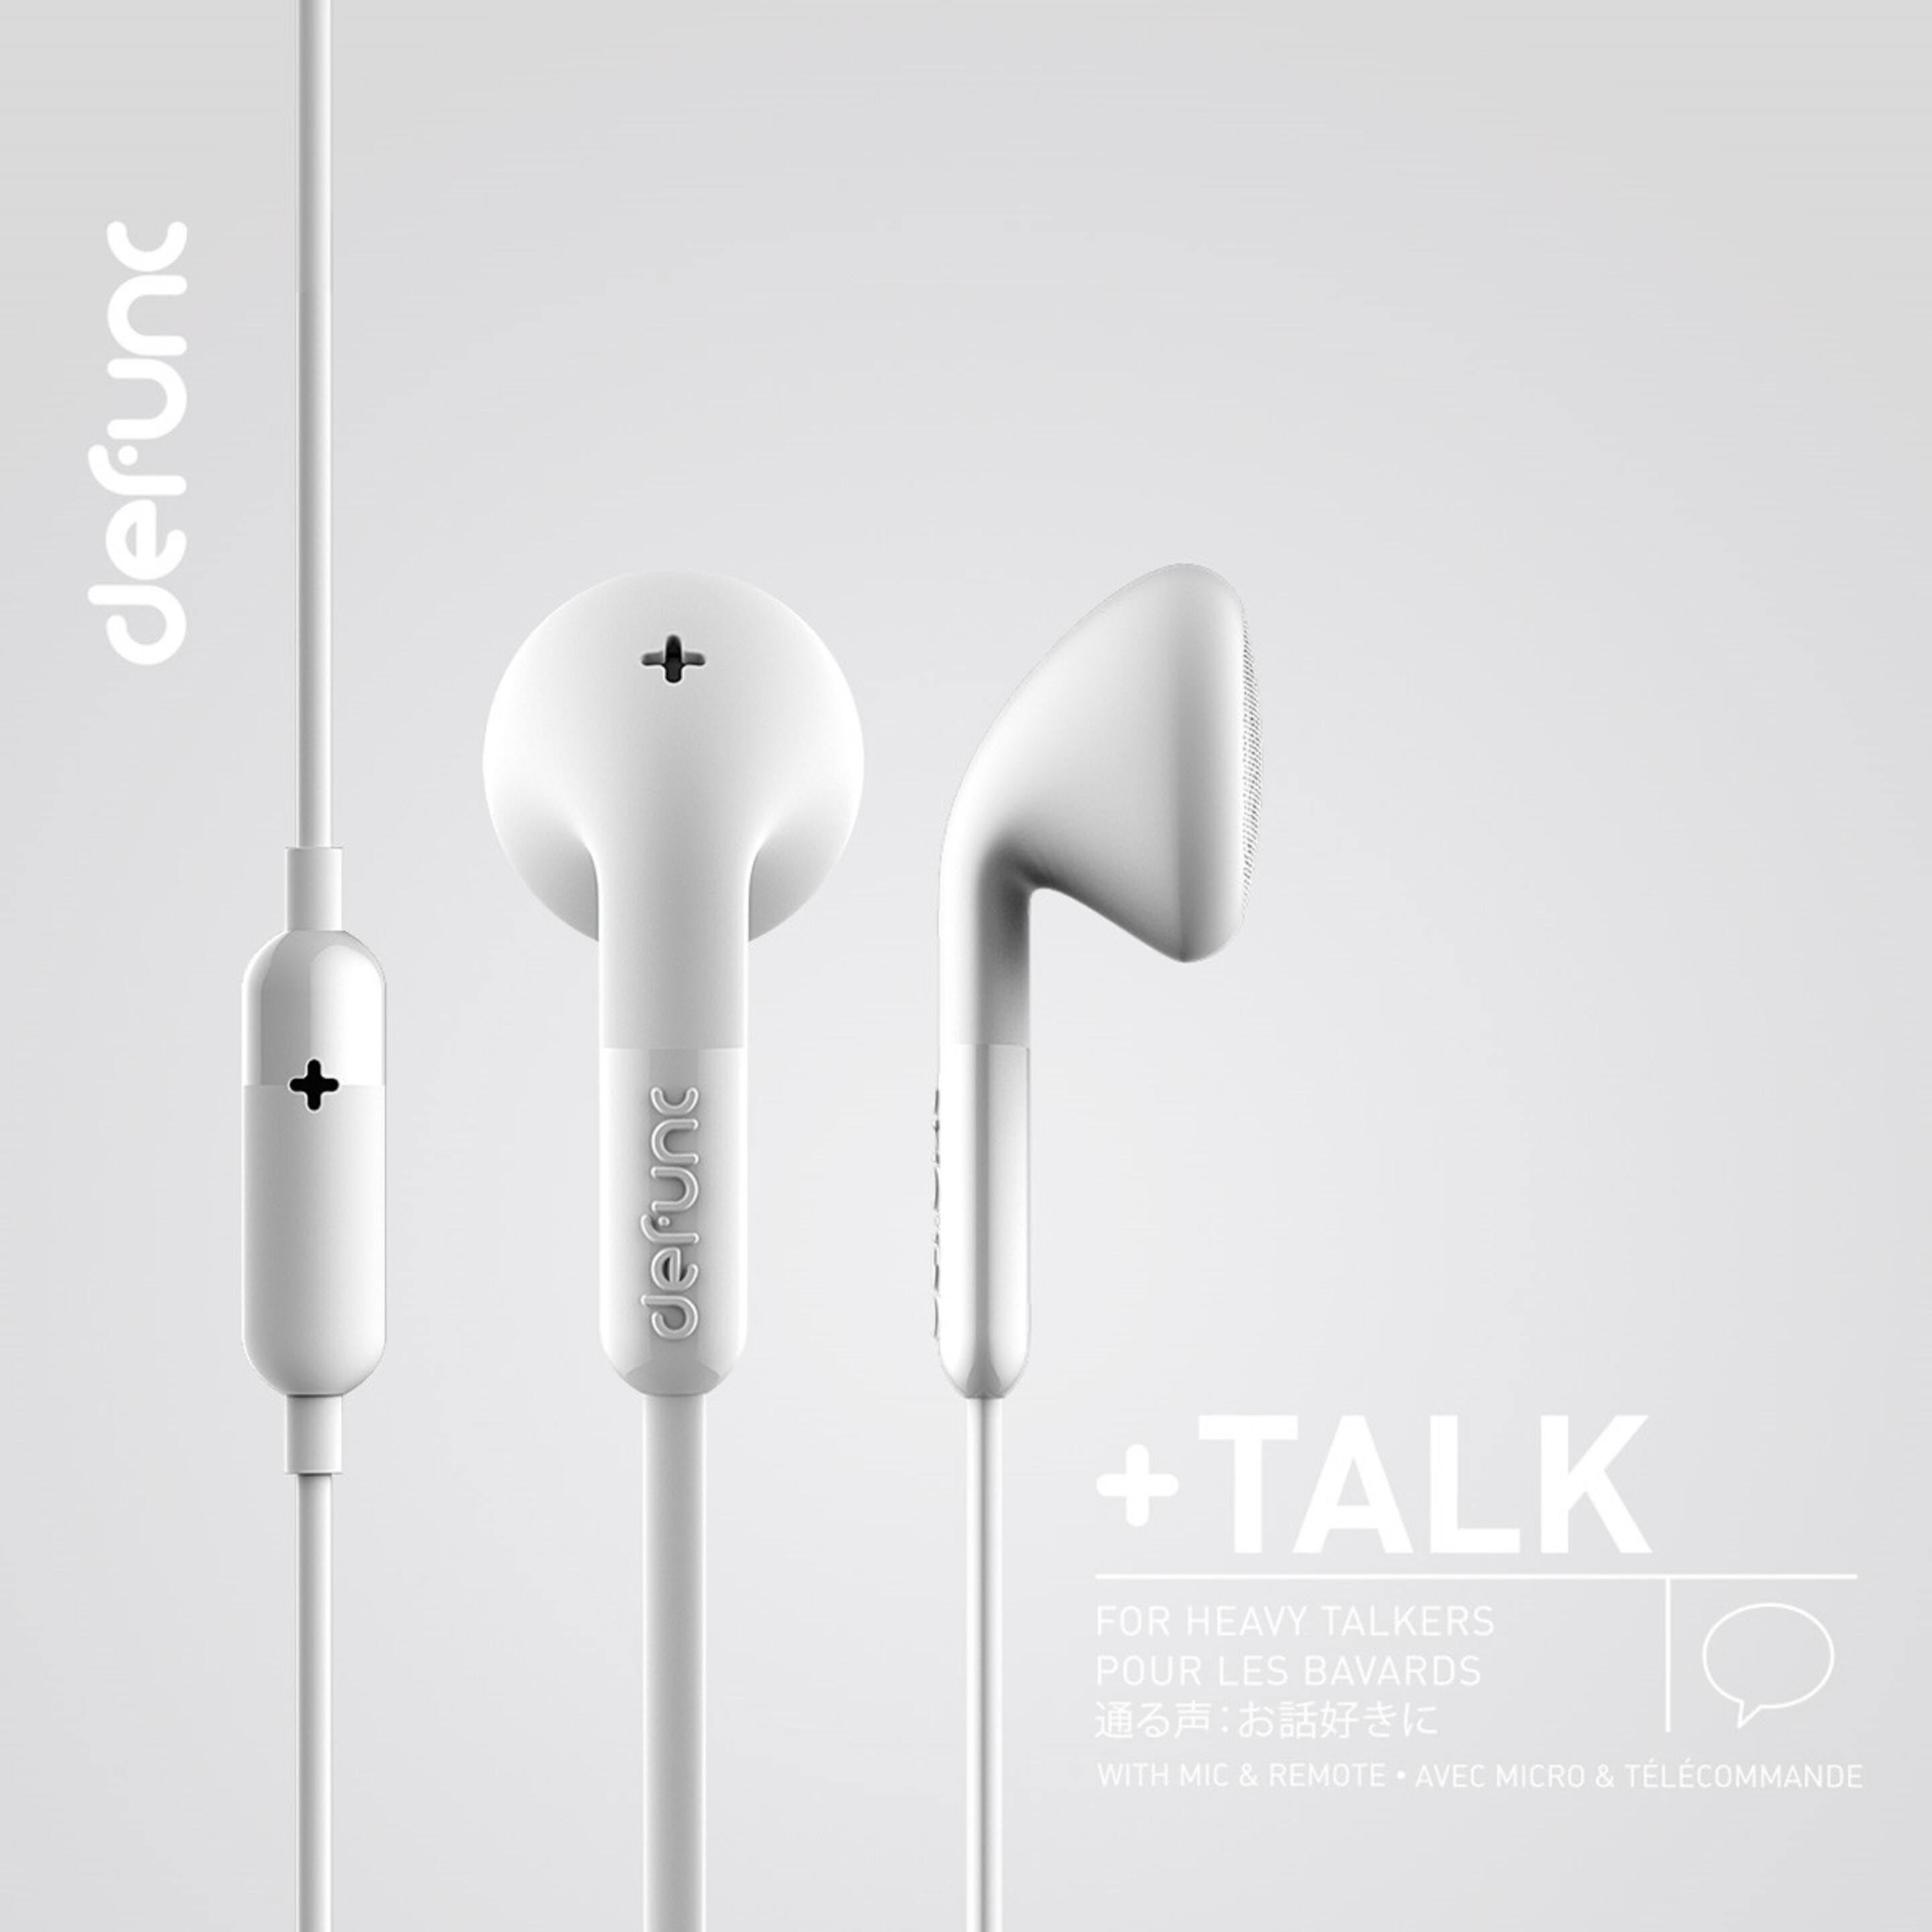 Auriculares Defunc + Talk Con Cable Jack 3,5 Mm - Blanco - Aur35  MKP